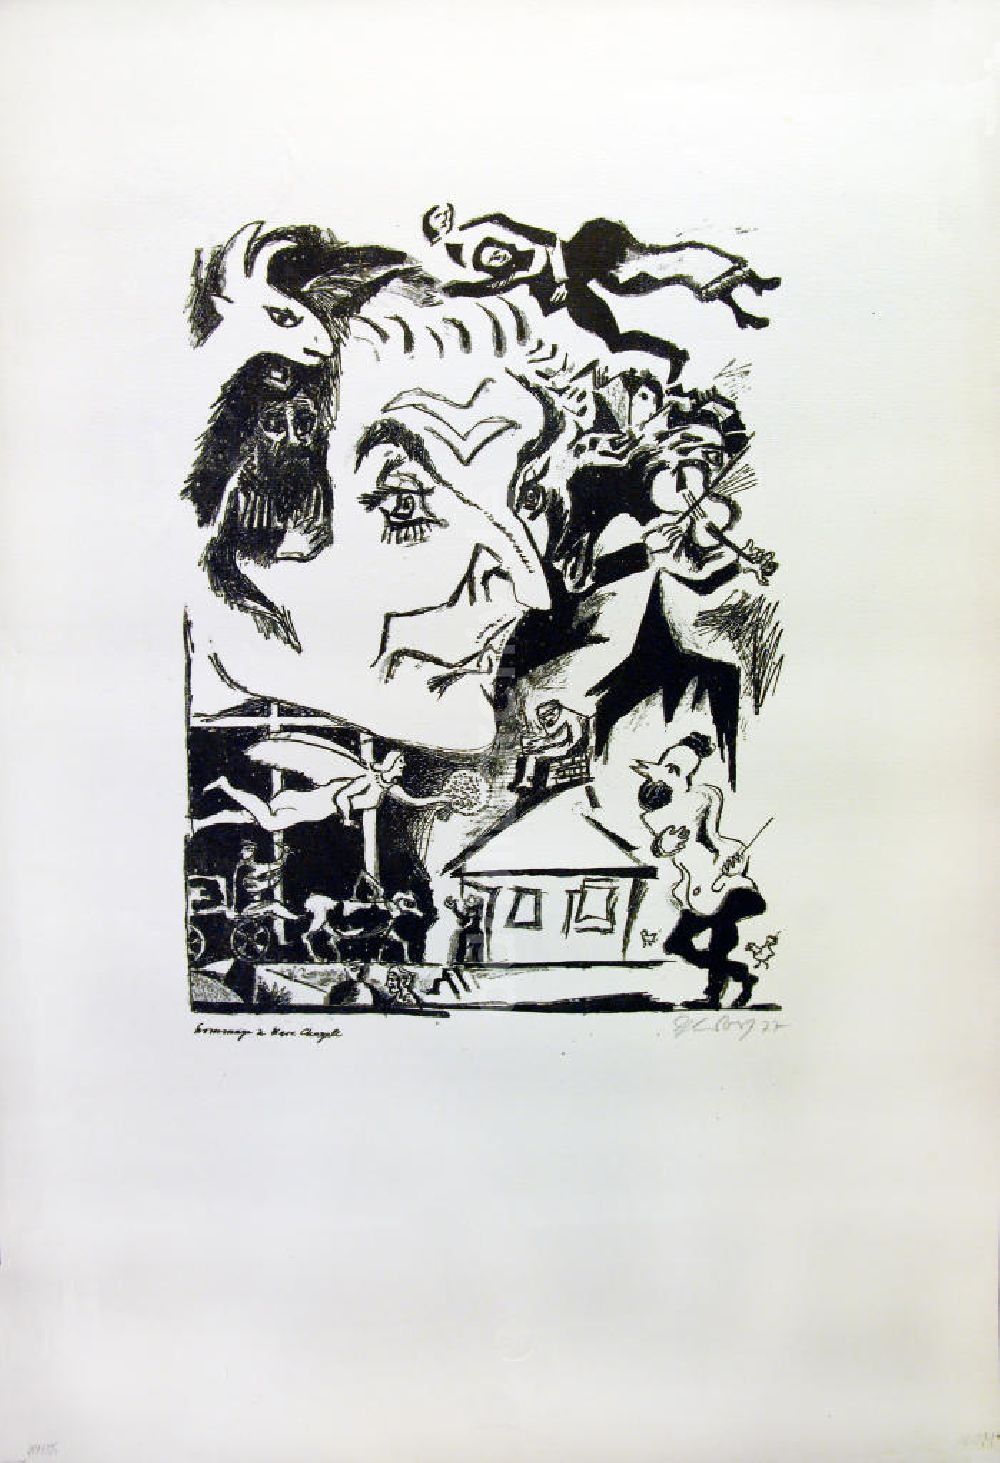 DDR-Fotoarchiv: Berlin - Grafik von Herbert Sandberg Hommage à Marc Chagall aus dem Jahr 1977